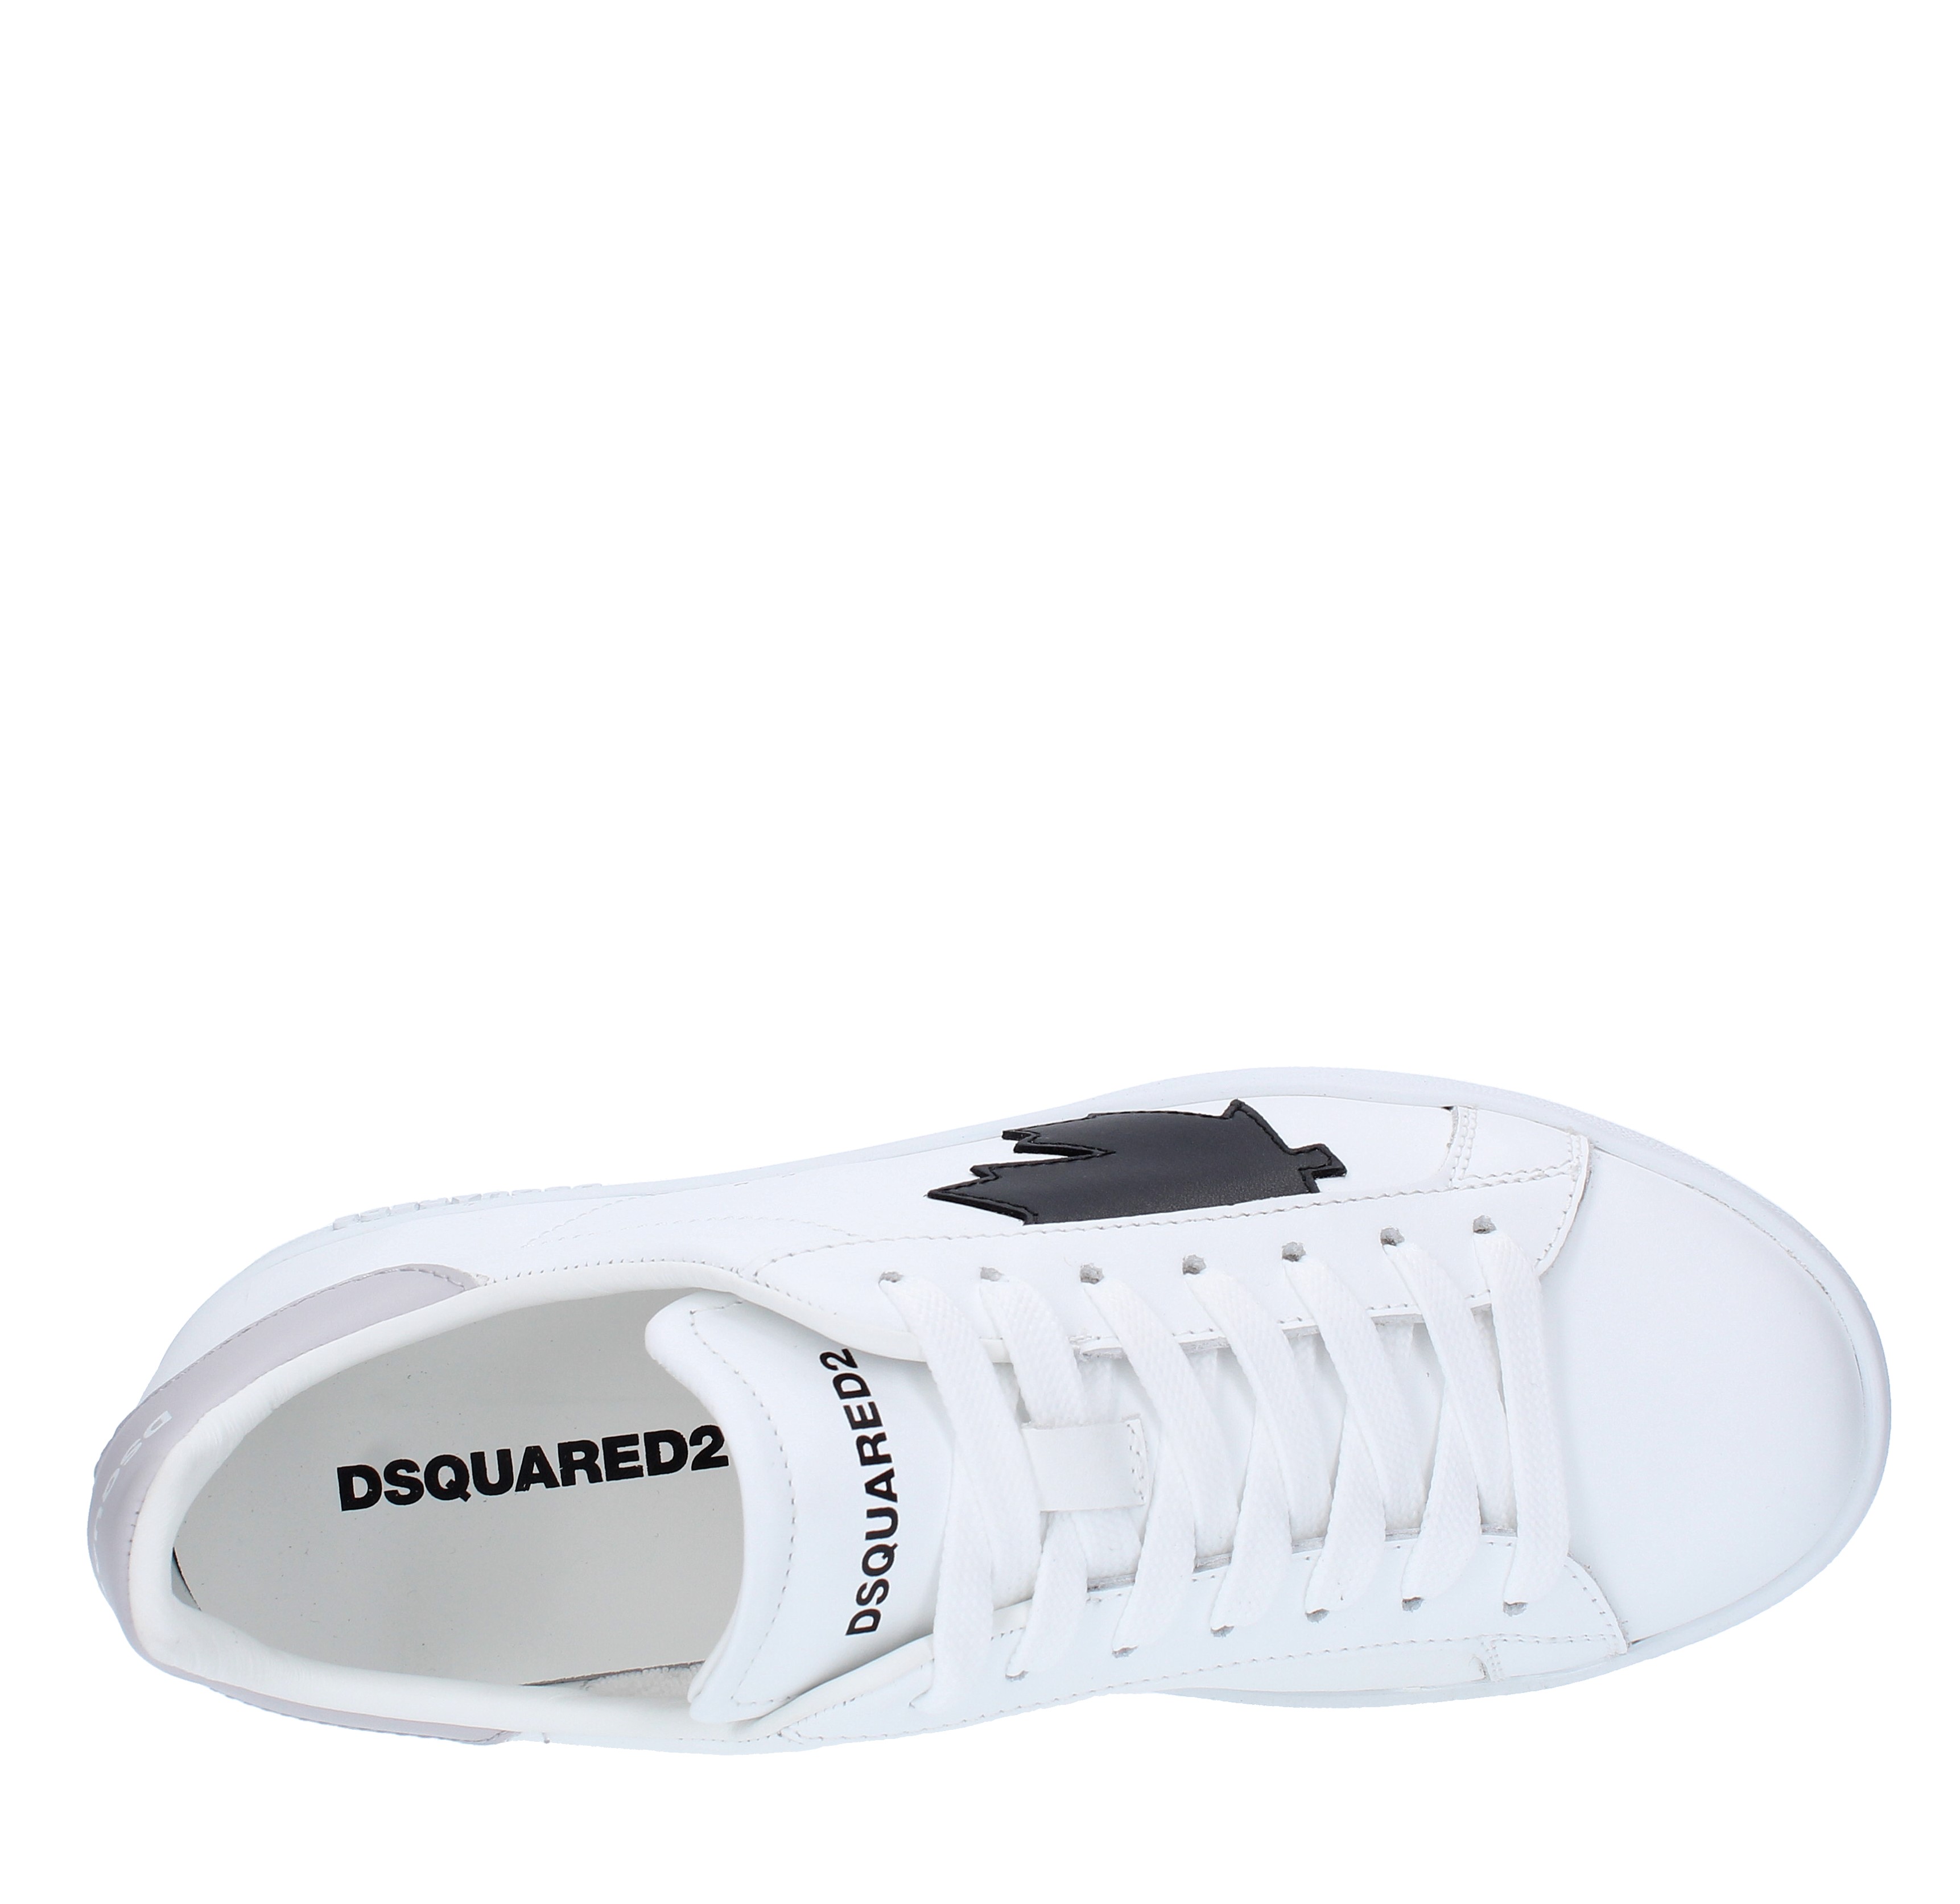 Sneakers DSQUARED2 BOXER in pelle di vitello - DSQUARED2 - Ginevra calzature